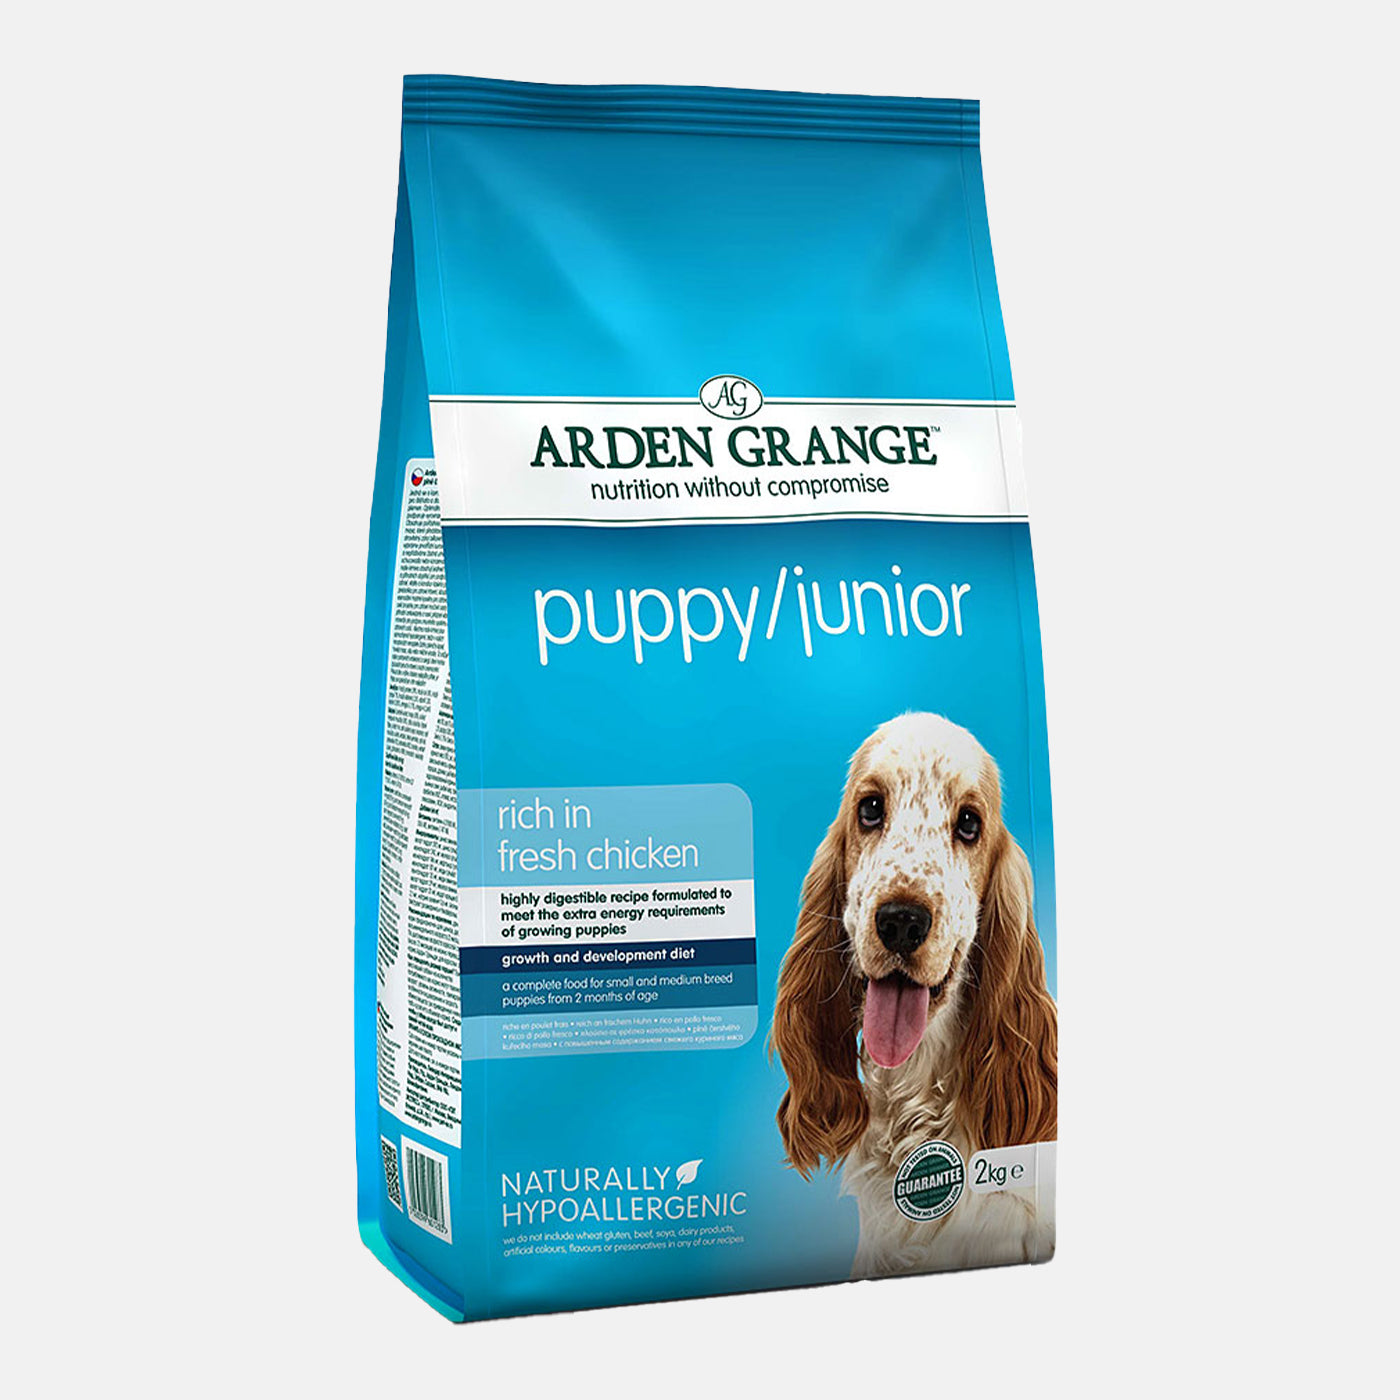 Arden Grange Puppy/Junior Dry Dog Food with Chicken & Rice